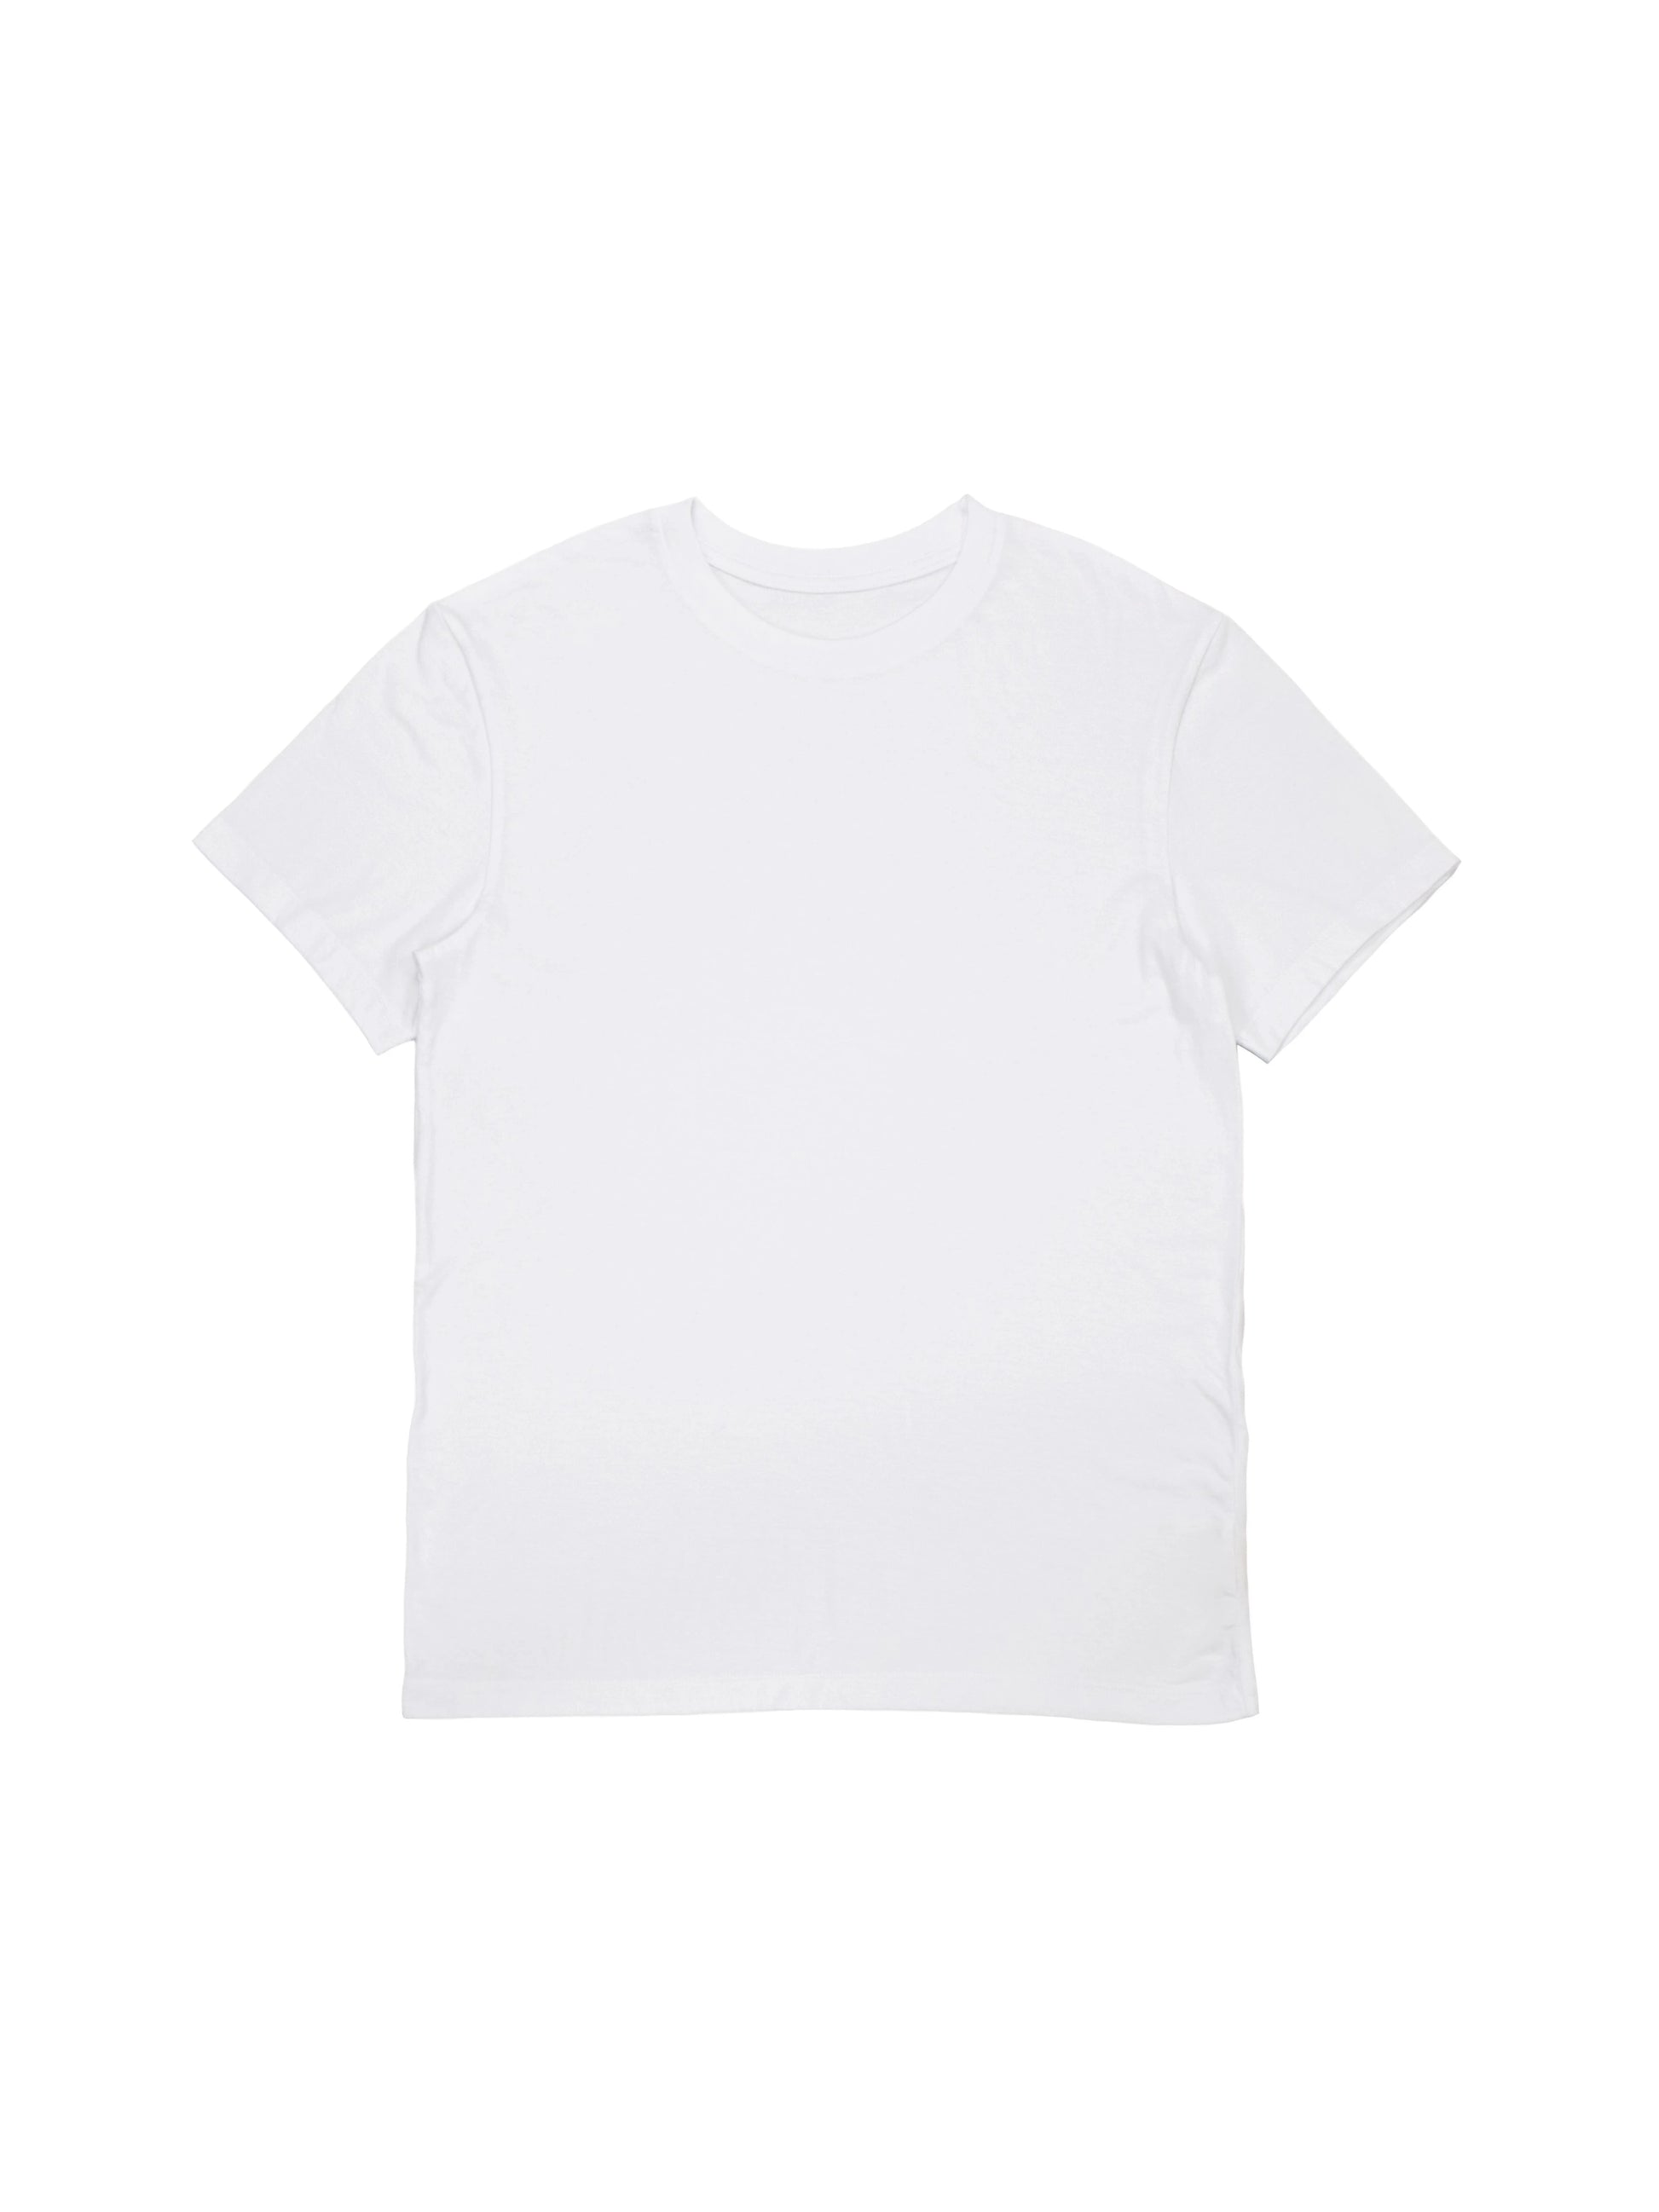 Boxy T-shirt - White Midweight Cotton